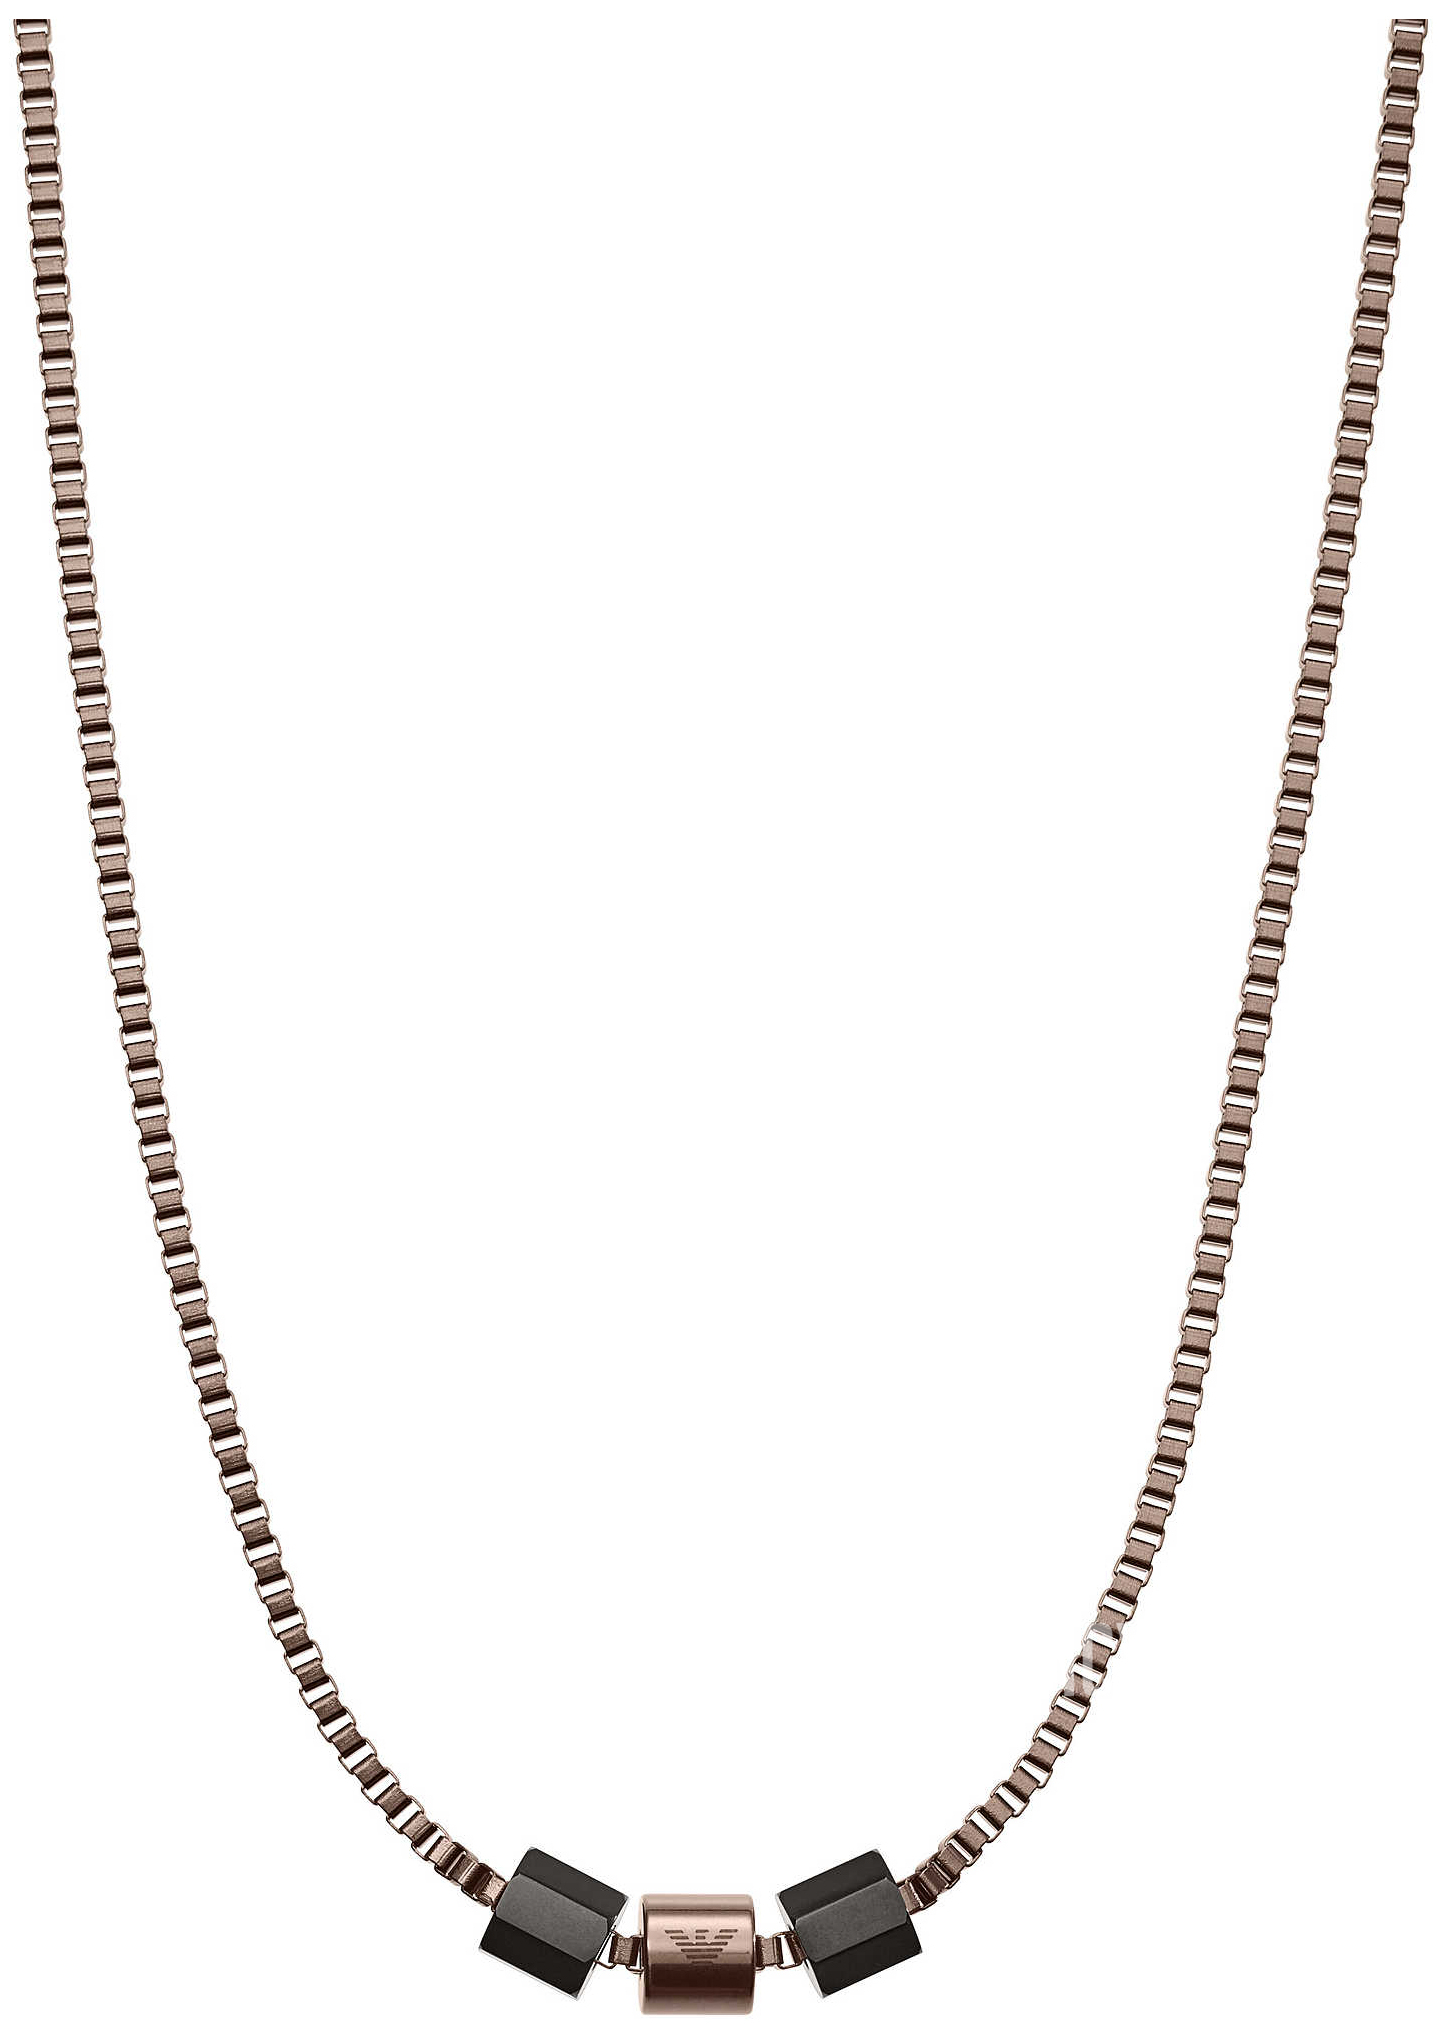 Emporio Armani men's necklace EGS2754060 | Amazon.com